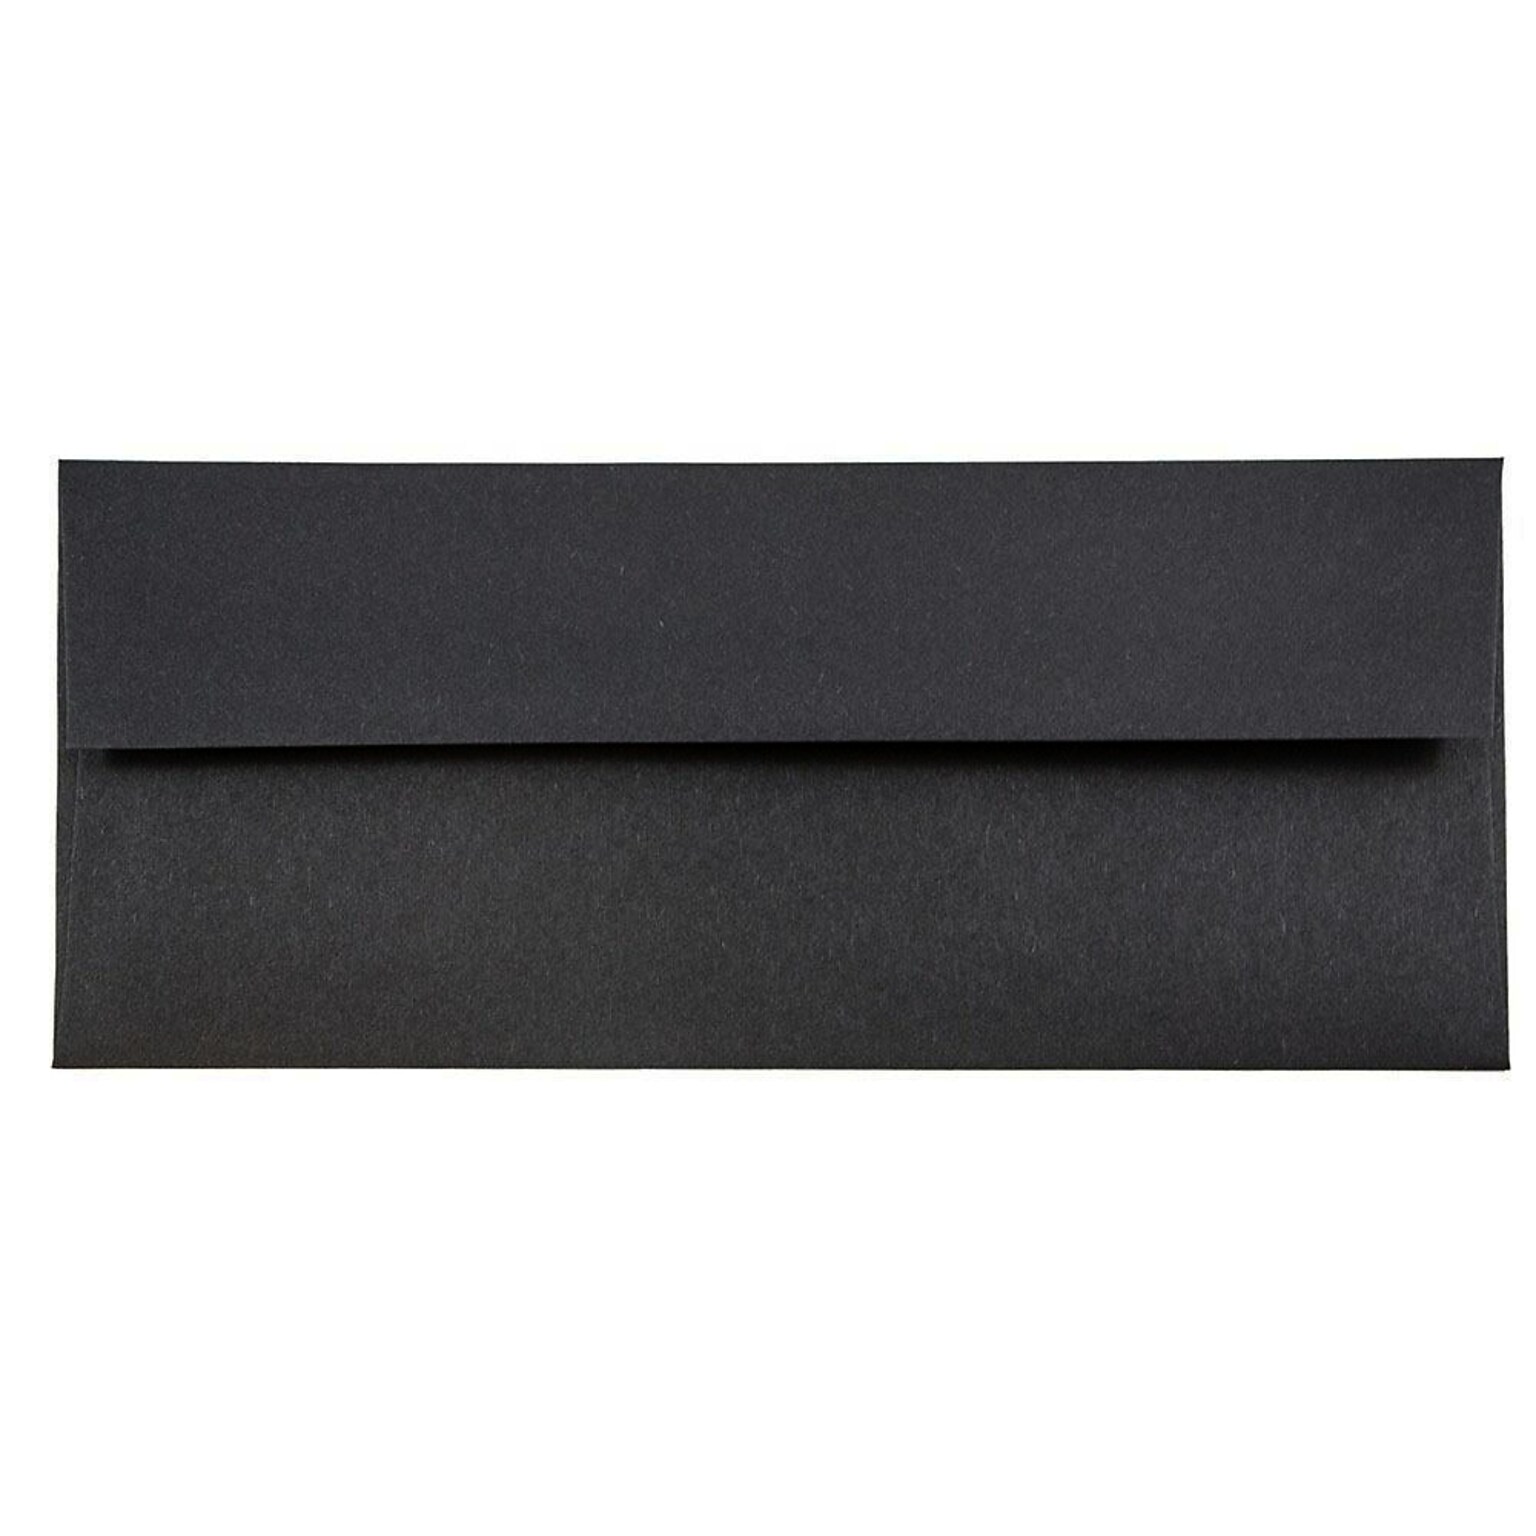 JAM Paper Open End #10 Business Envelope, 4 1/8 x 9 1/2, Black, 50/Pack (900921796I)